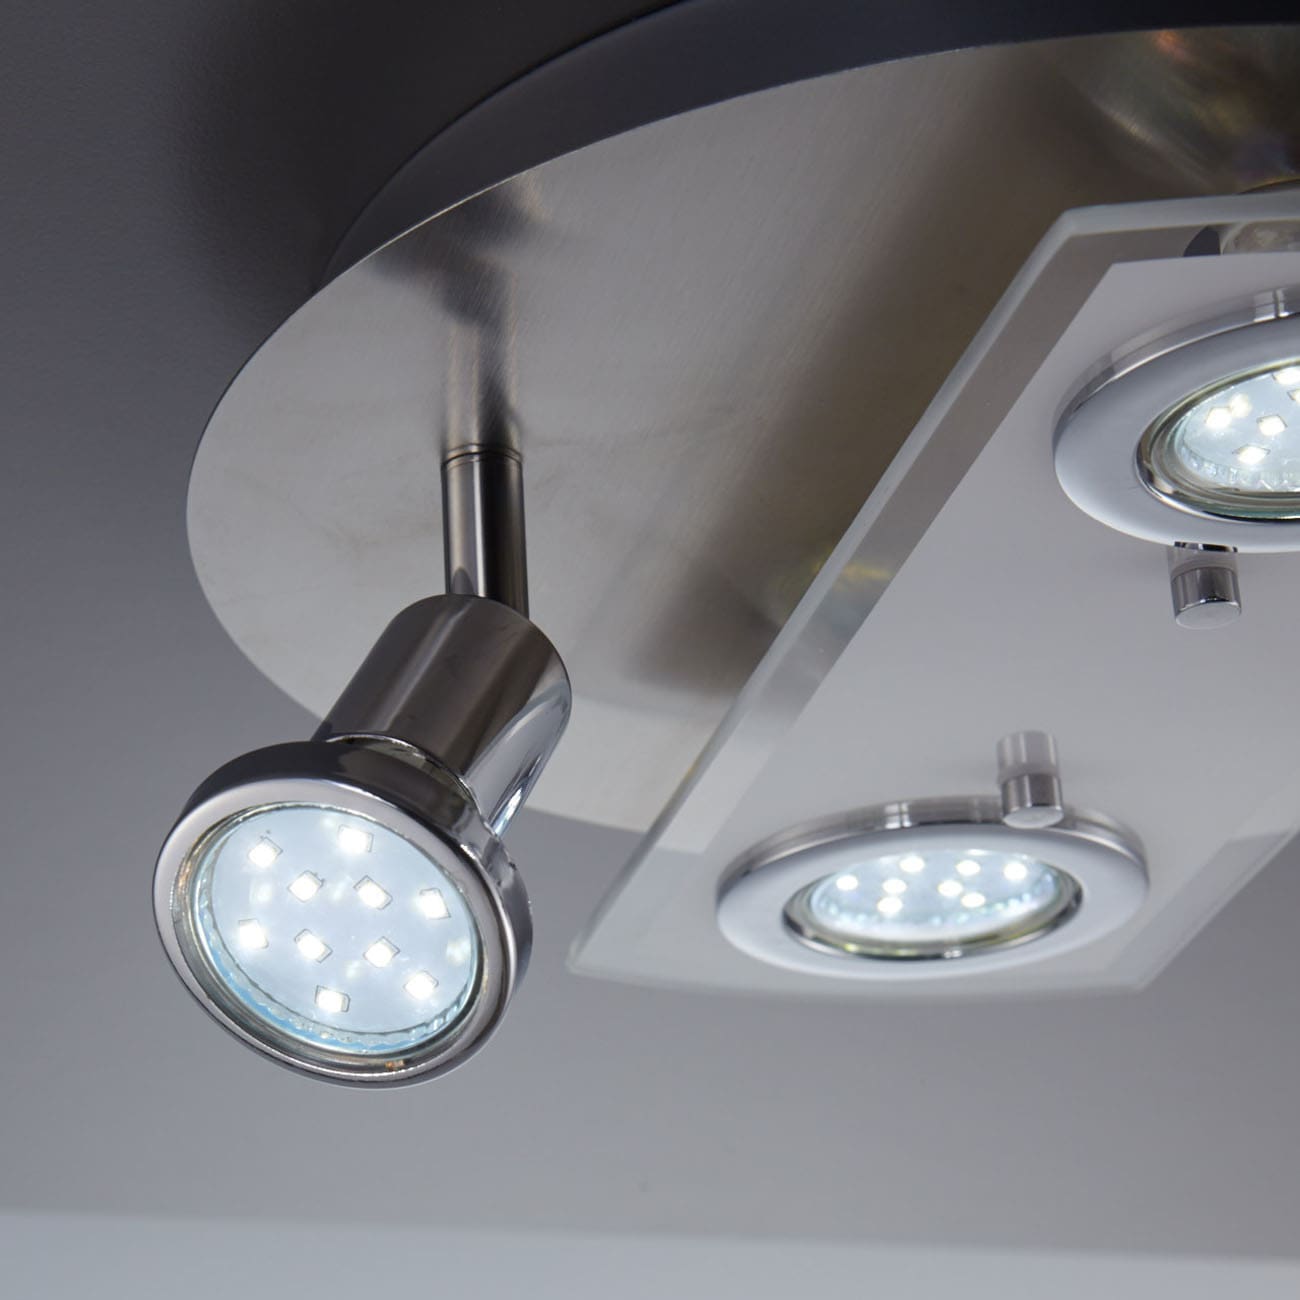 LED Deckenleuchte 29cm - 4-flammig - moderne Deckenlampe 2 Spots schwenkbar Glas Metall GU10 12W 1000lm warmweiß | Matt-Nickel - 4